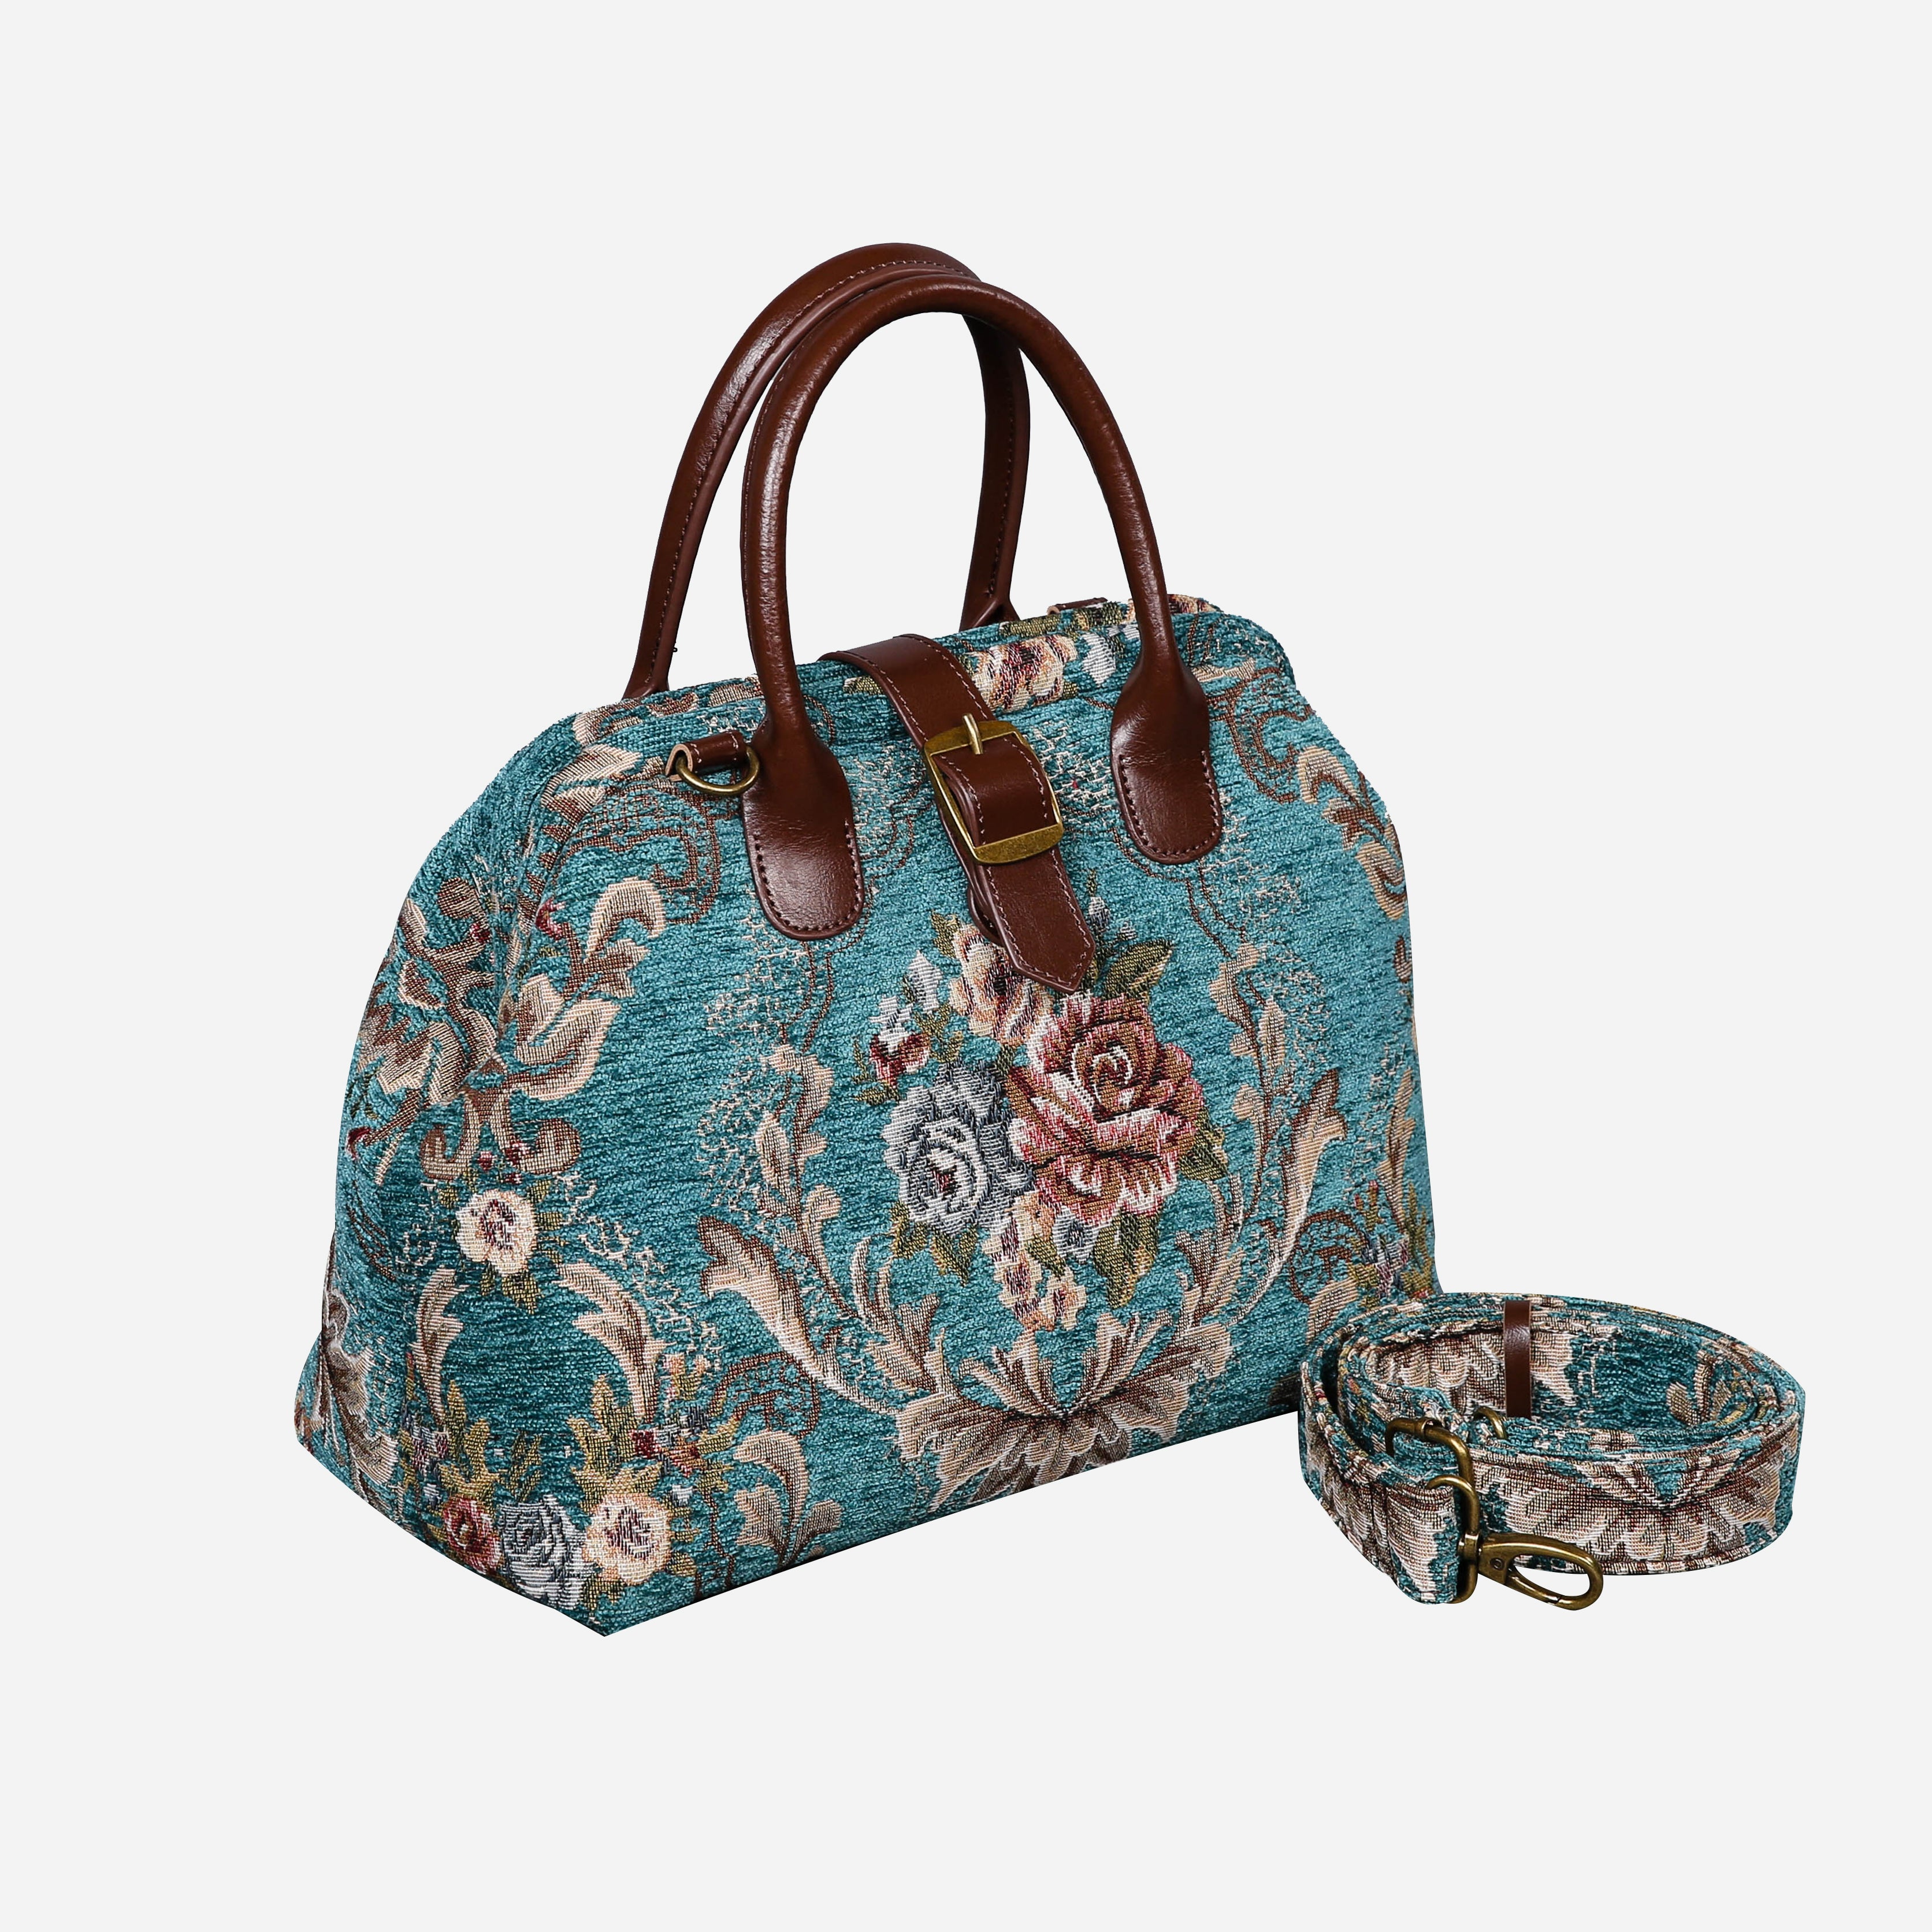 Floral Teal Carpet Handbag Purse carpet bag MCW Handmade-2